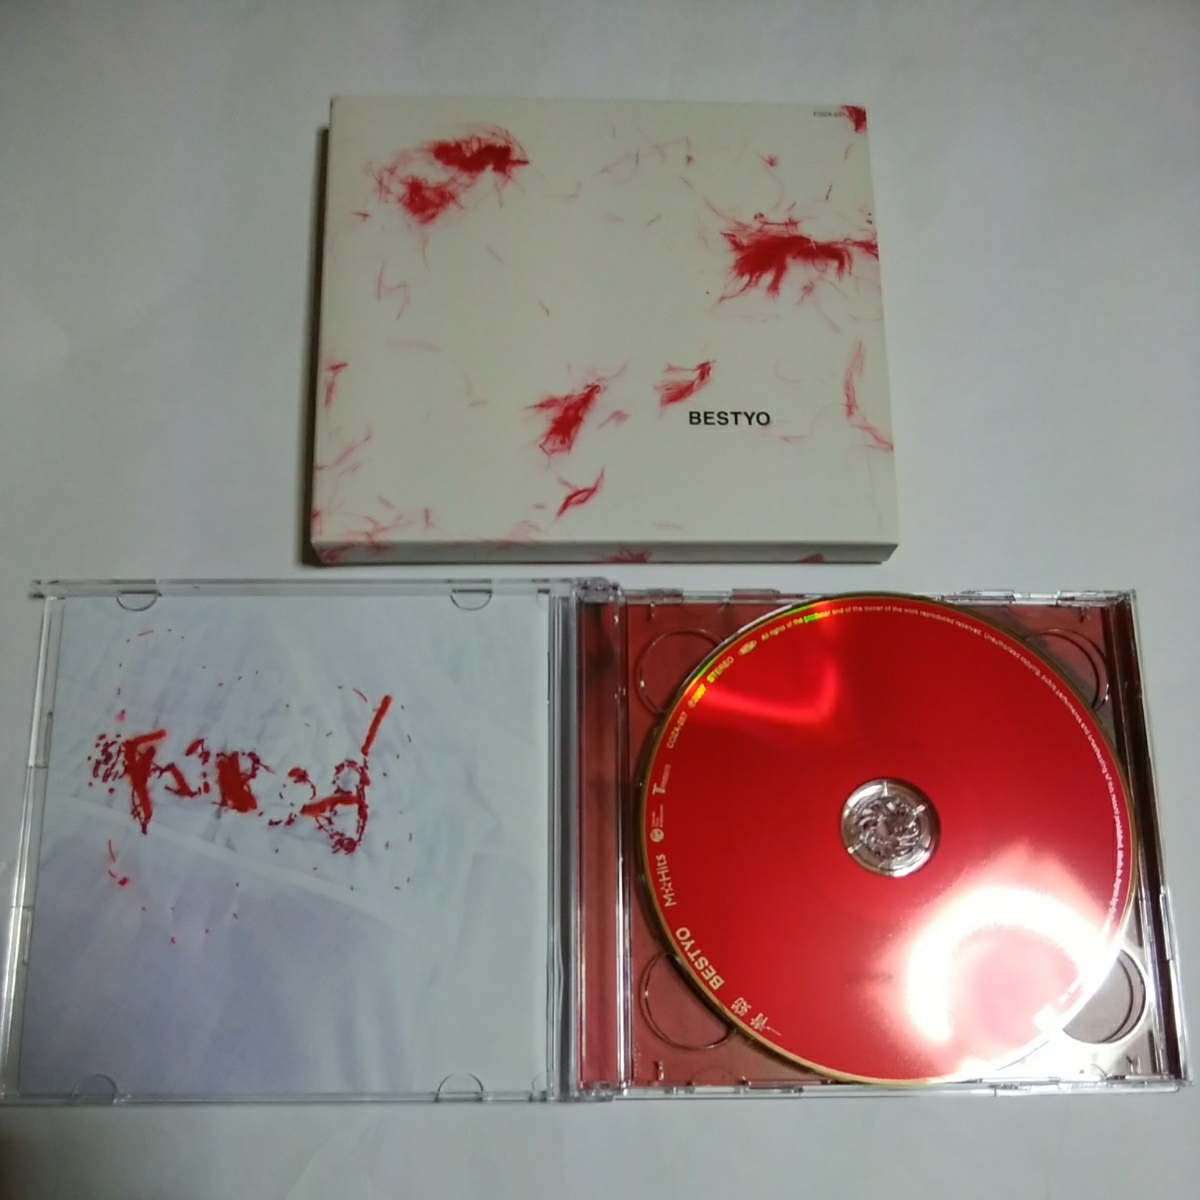  Hitoto Yo BESTYO первый раз ограничение запись CD+DVD CONCERTYO лучший альбом BEST быстрое решение корнус флорида ... плач .